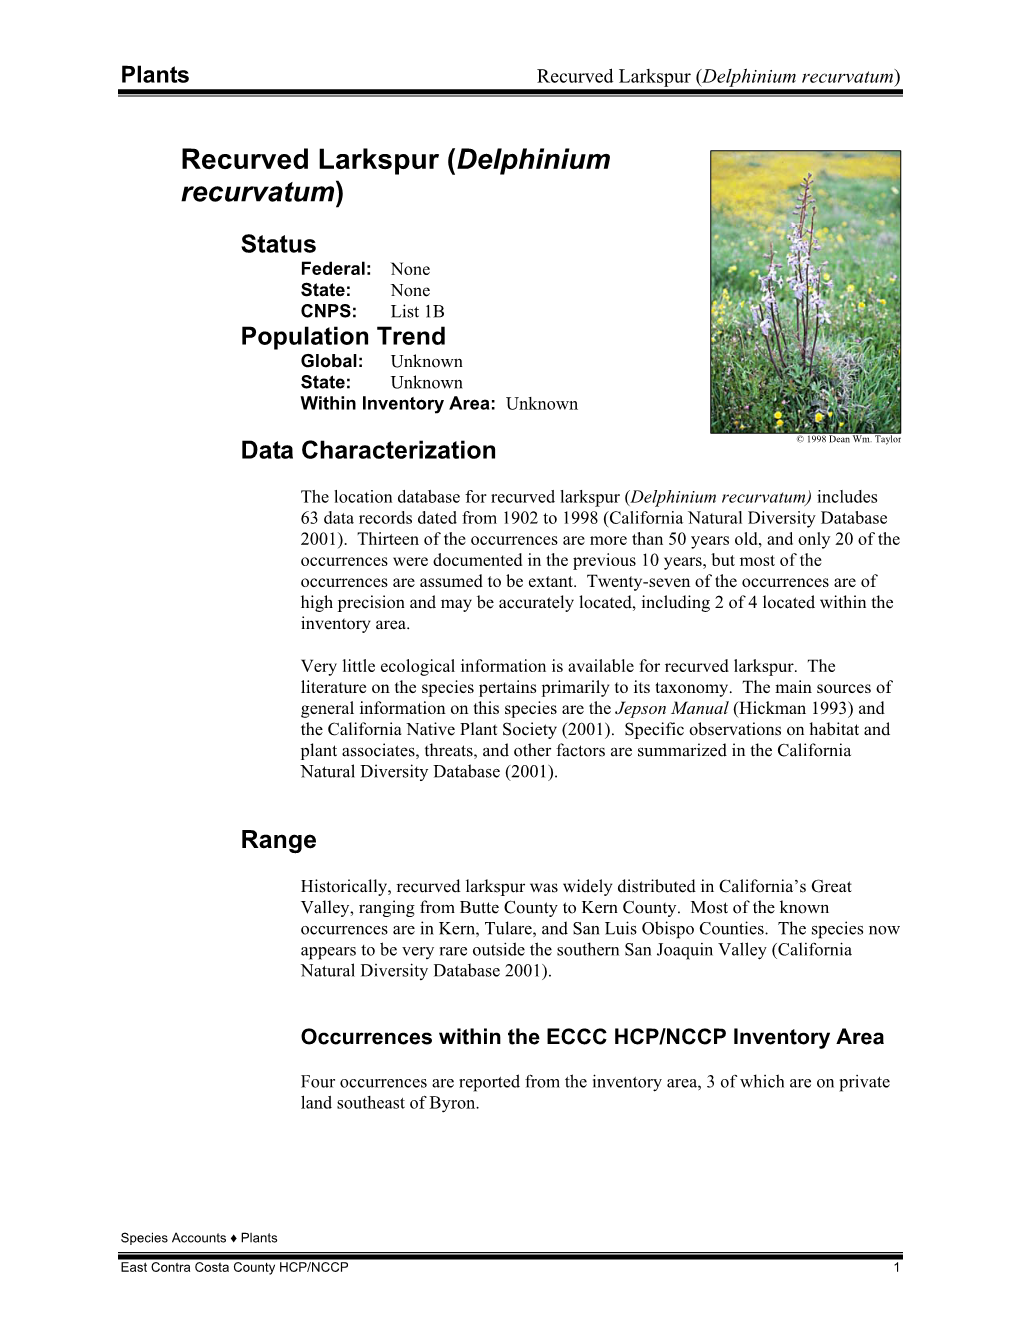 Recurved Larkspur(Delphinium Recurvatum) Species Profile